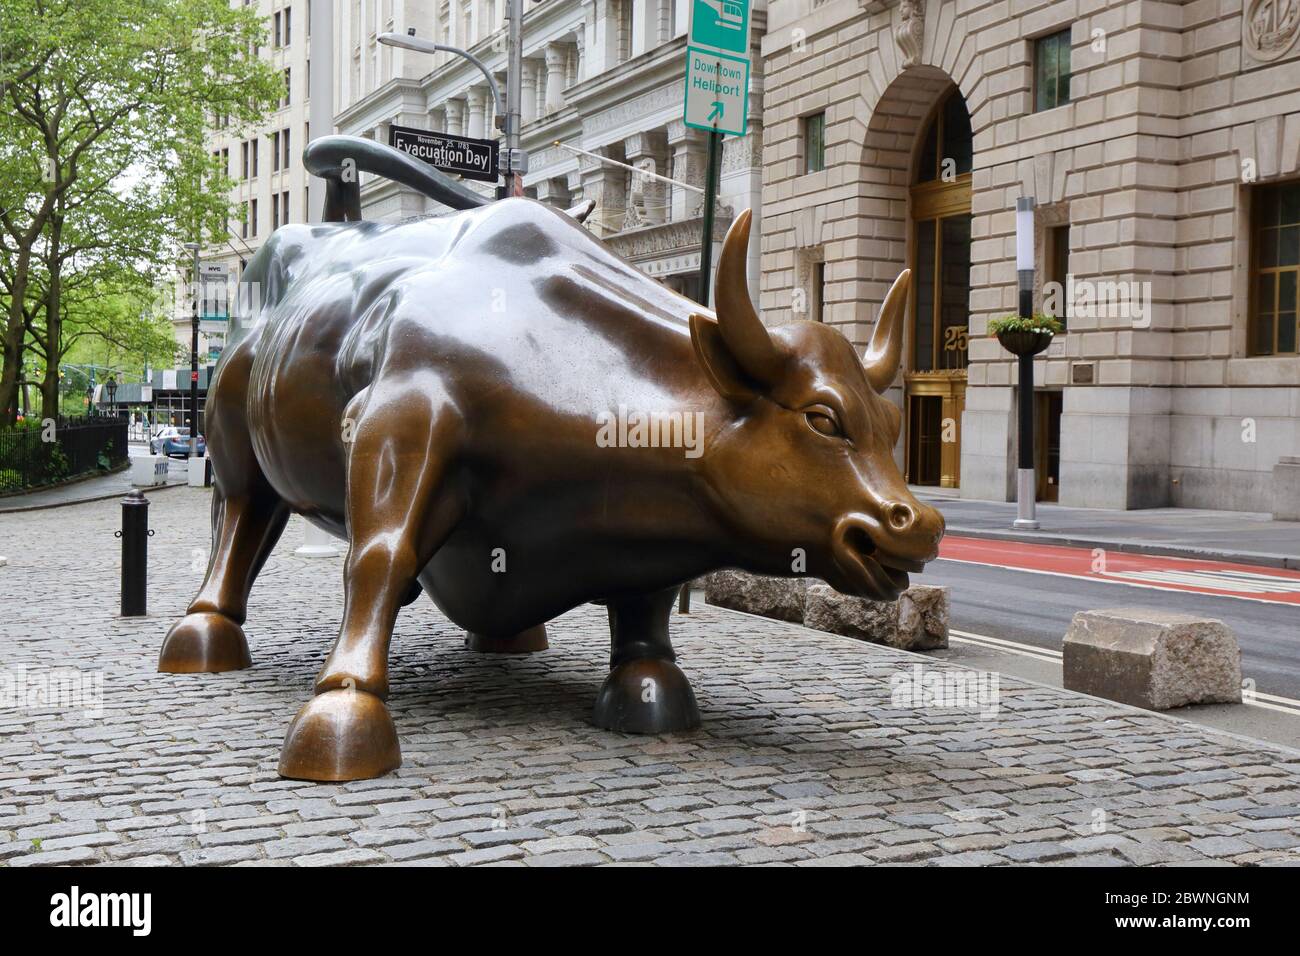 Charging Bull von Arturo Di Modica. Eine Bronzeskulptur, die die Wall Street darstellt, befindet sich in Bowling Green, Manhattan, New York. Keine Menschen Stockfoto